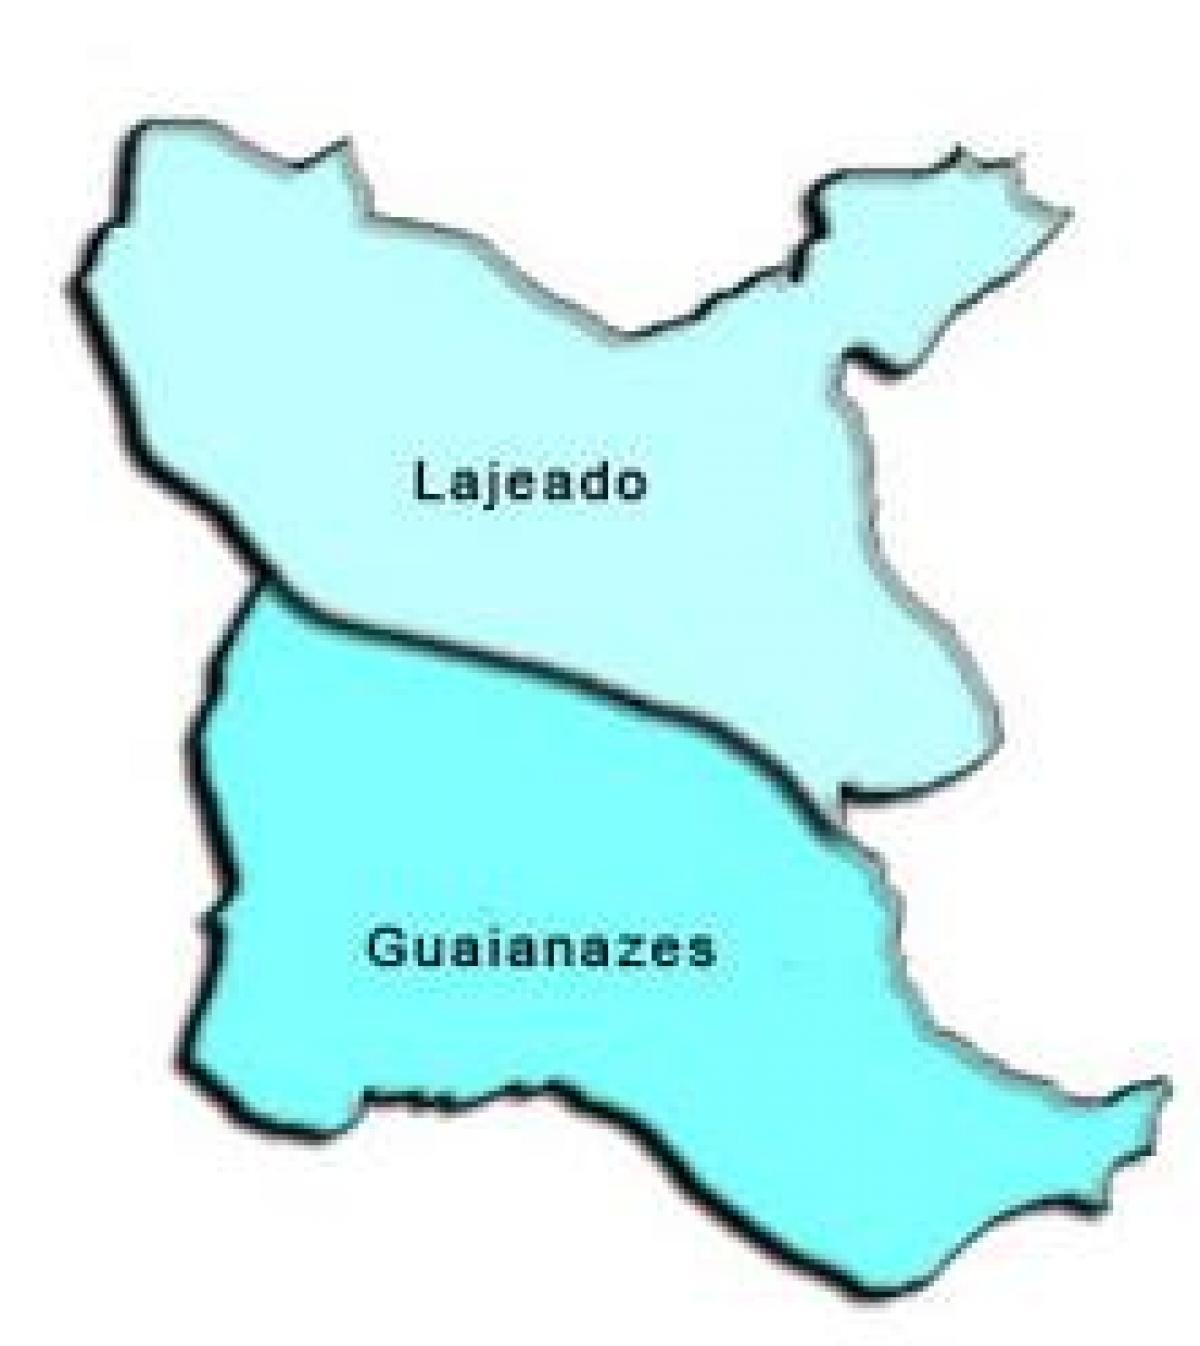 Kaart Guaianases alam-prefektuur